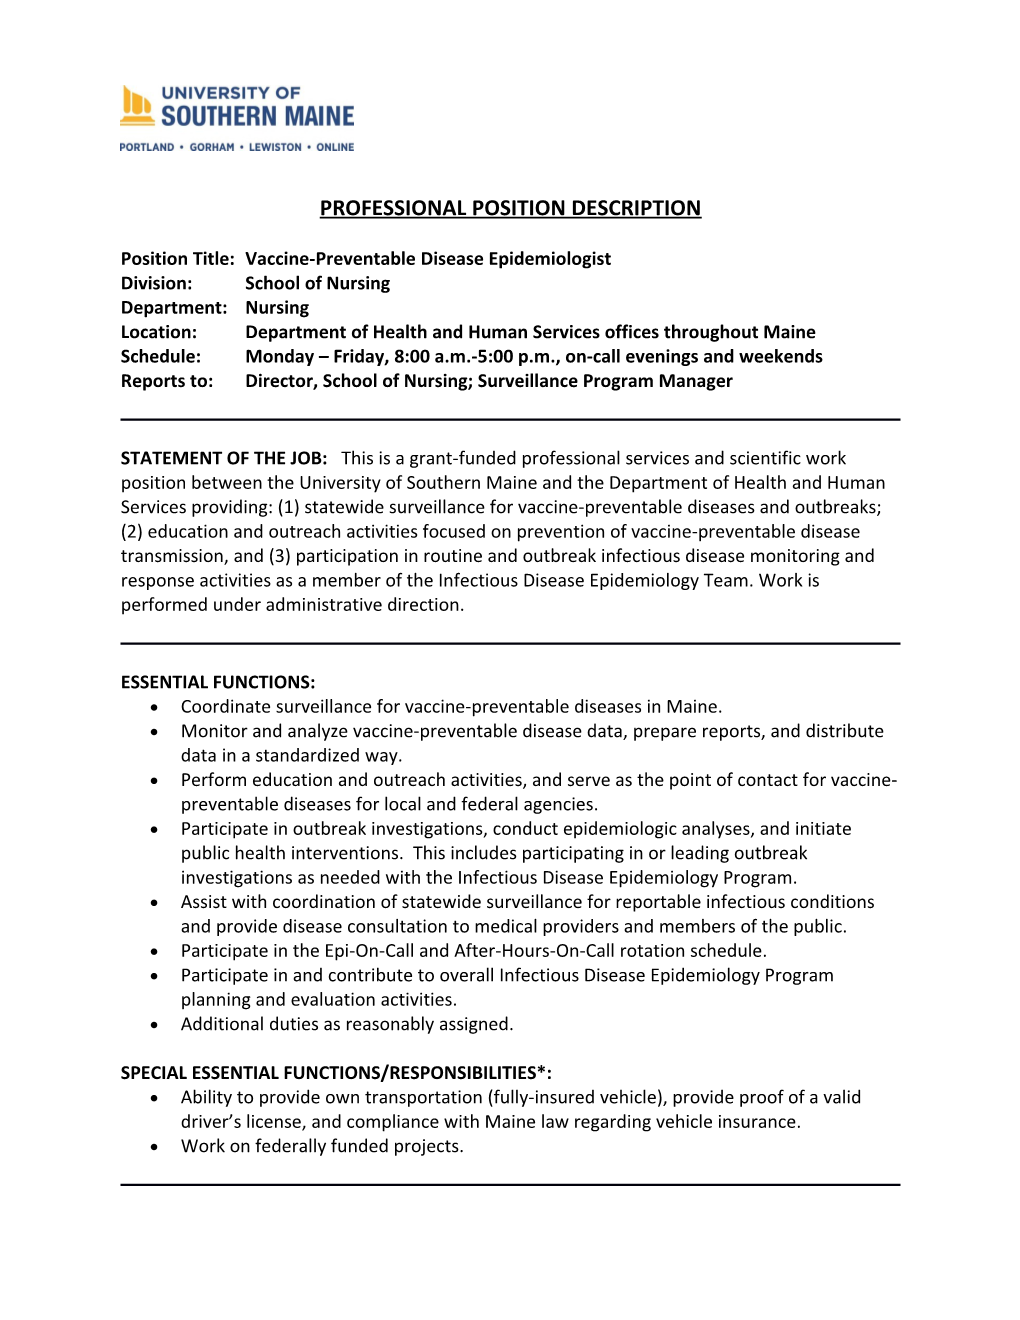 Position Title:Vaccine-Preventable Disease Epidemiologist